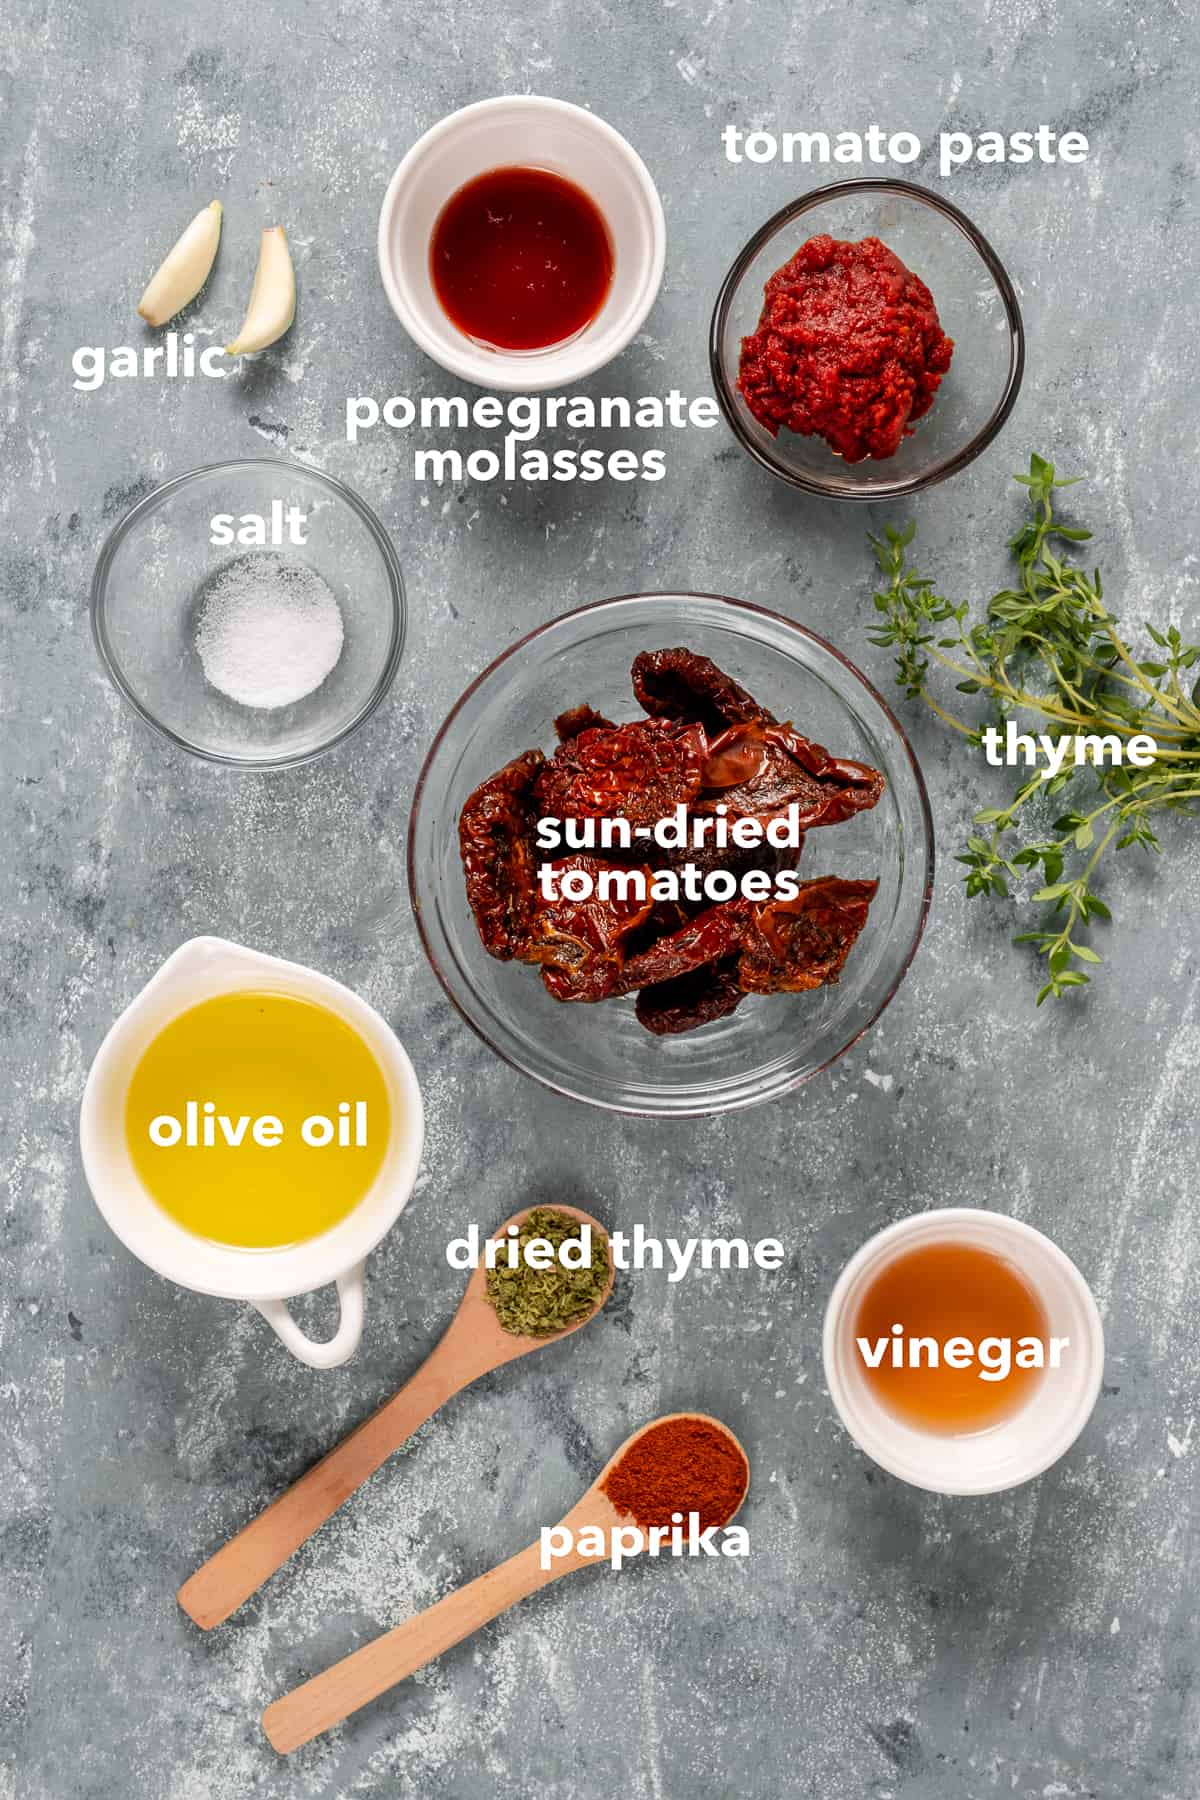 晒干的番茄、番茄酱、石榴糖浆、橄榄油、醋、香料、大蒜和新鲜的百里香放在灰色的背景上。